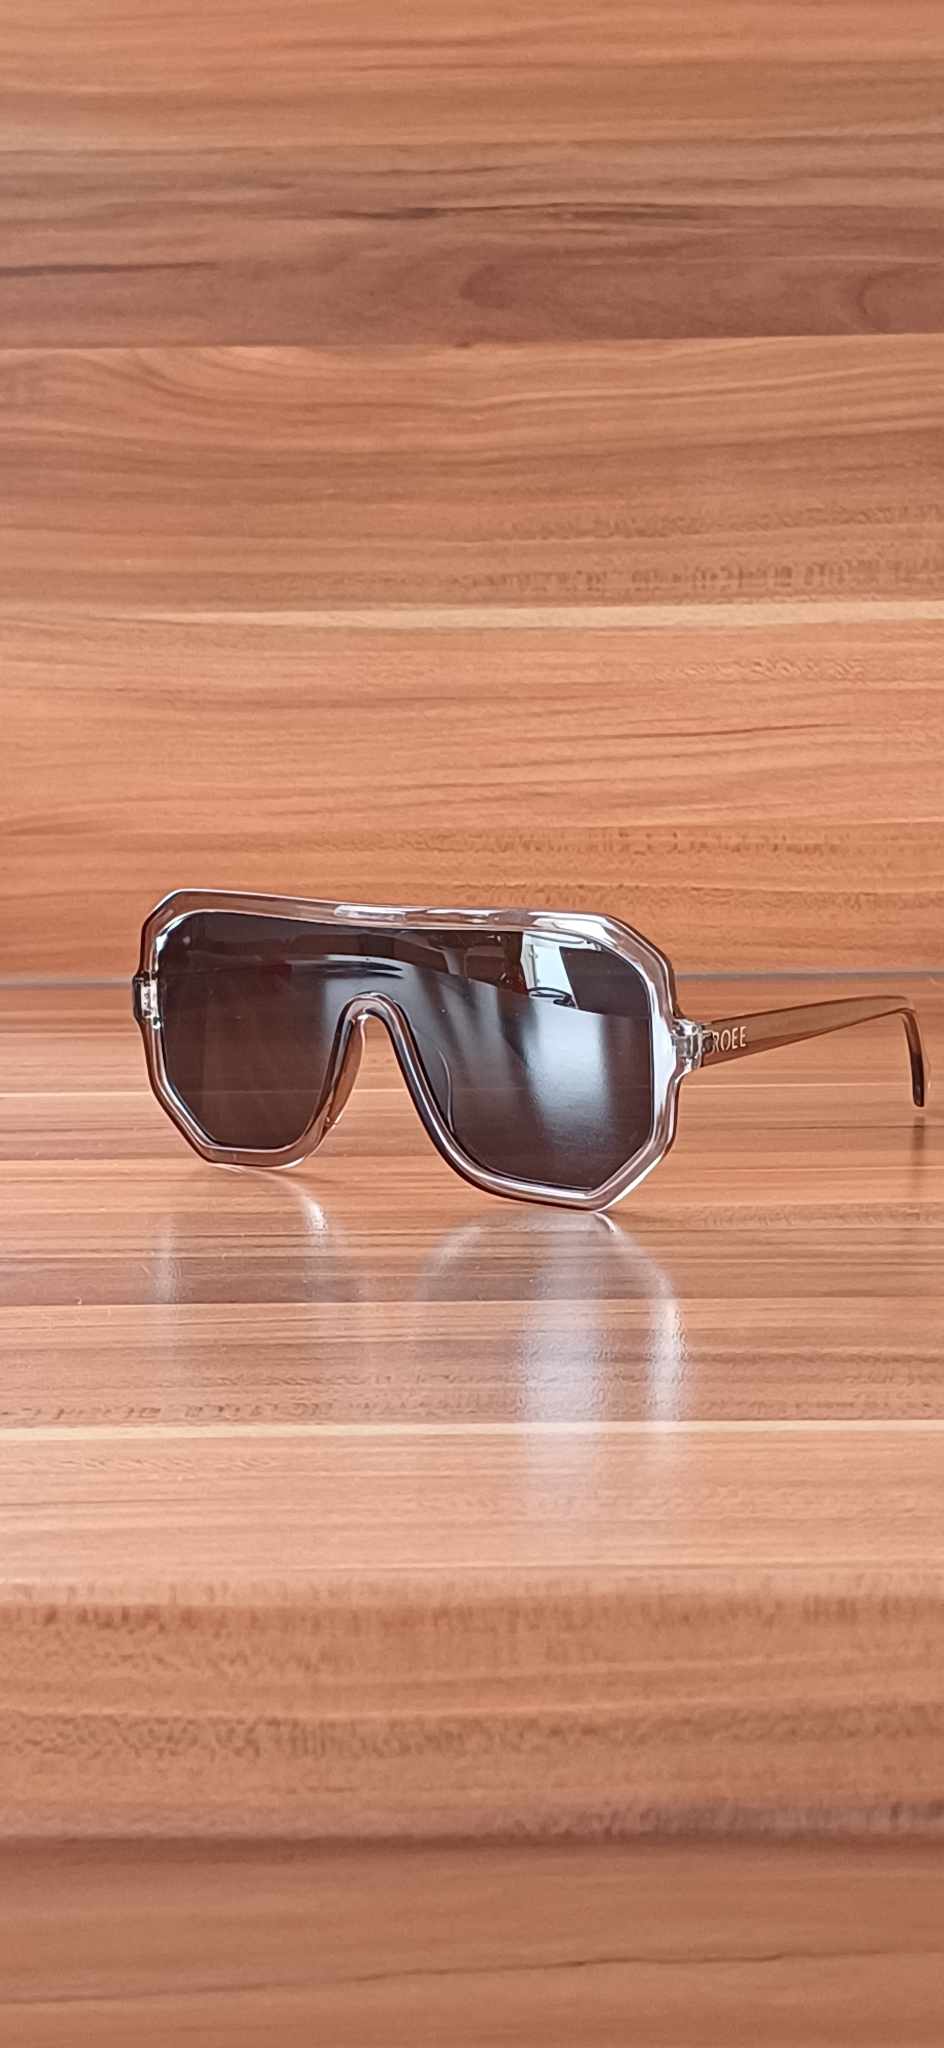 retro_punch sunglasses silver